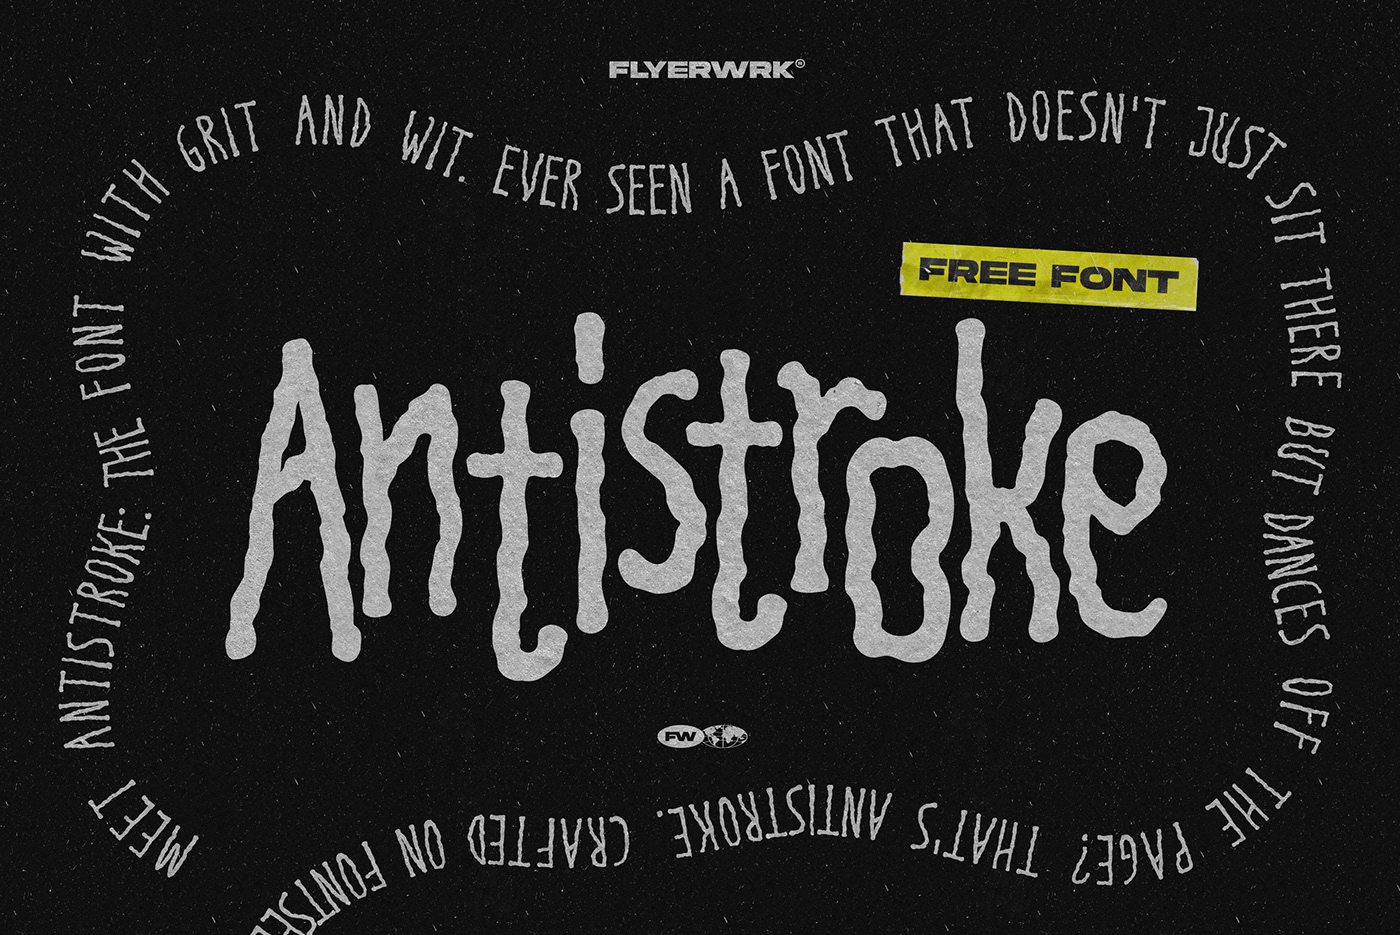 Antidesign typography   font free freebie handwritten Typeface rough rebel punk